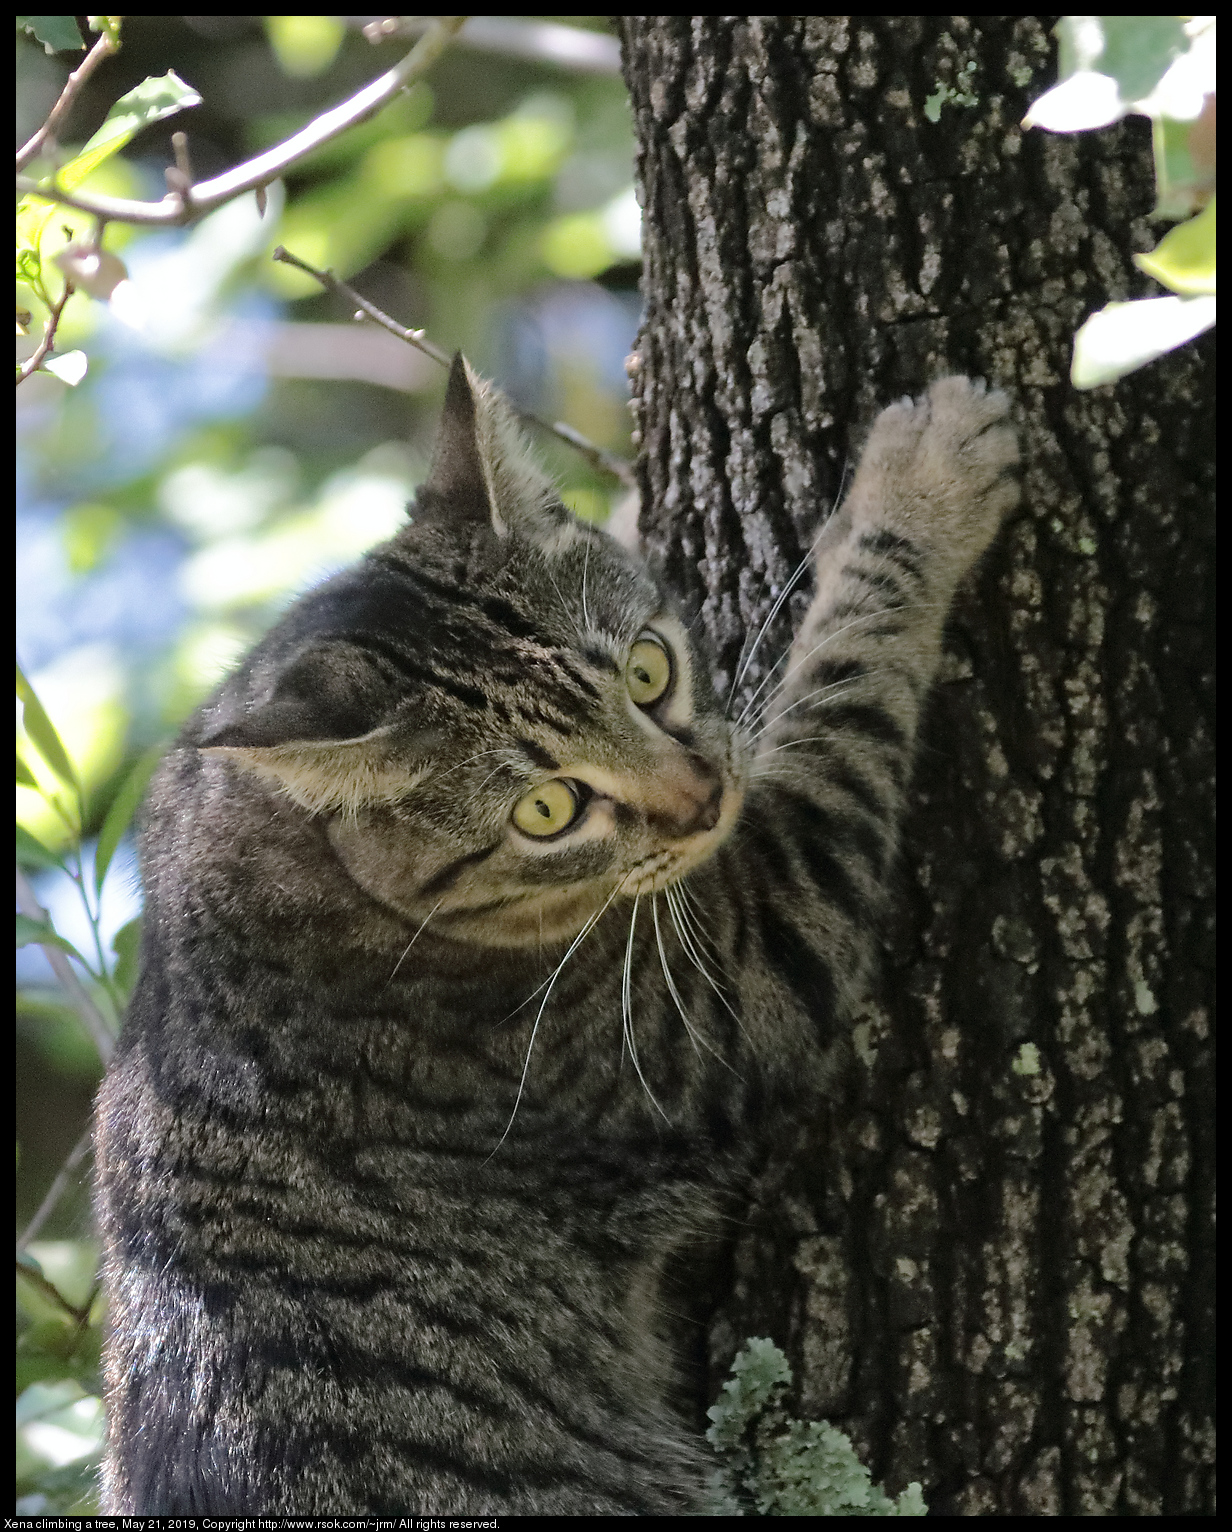 Xena climbing a tree, May 21, 2019